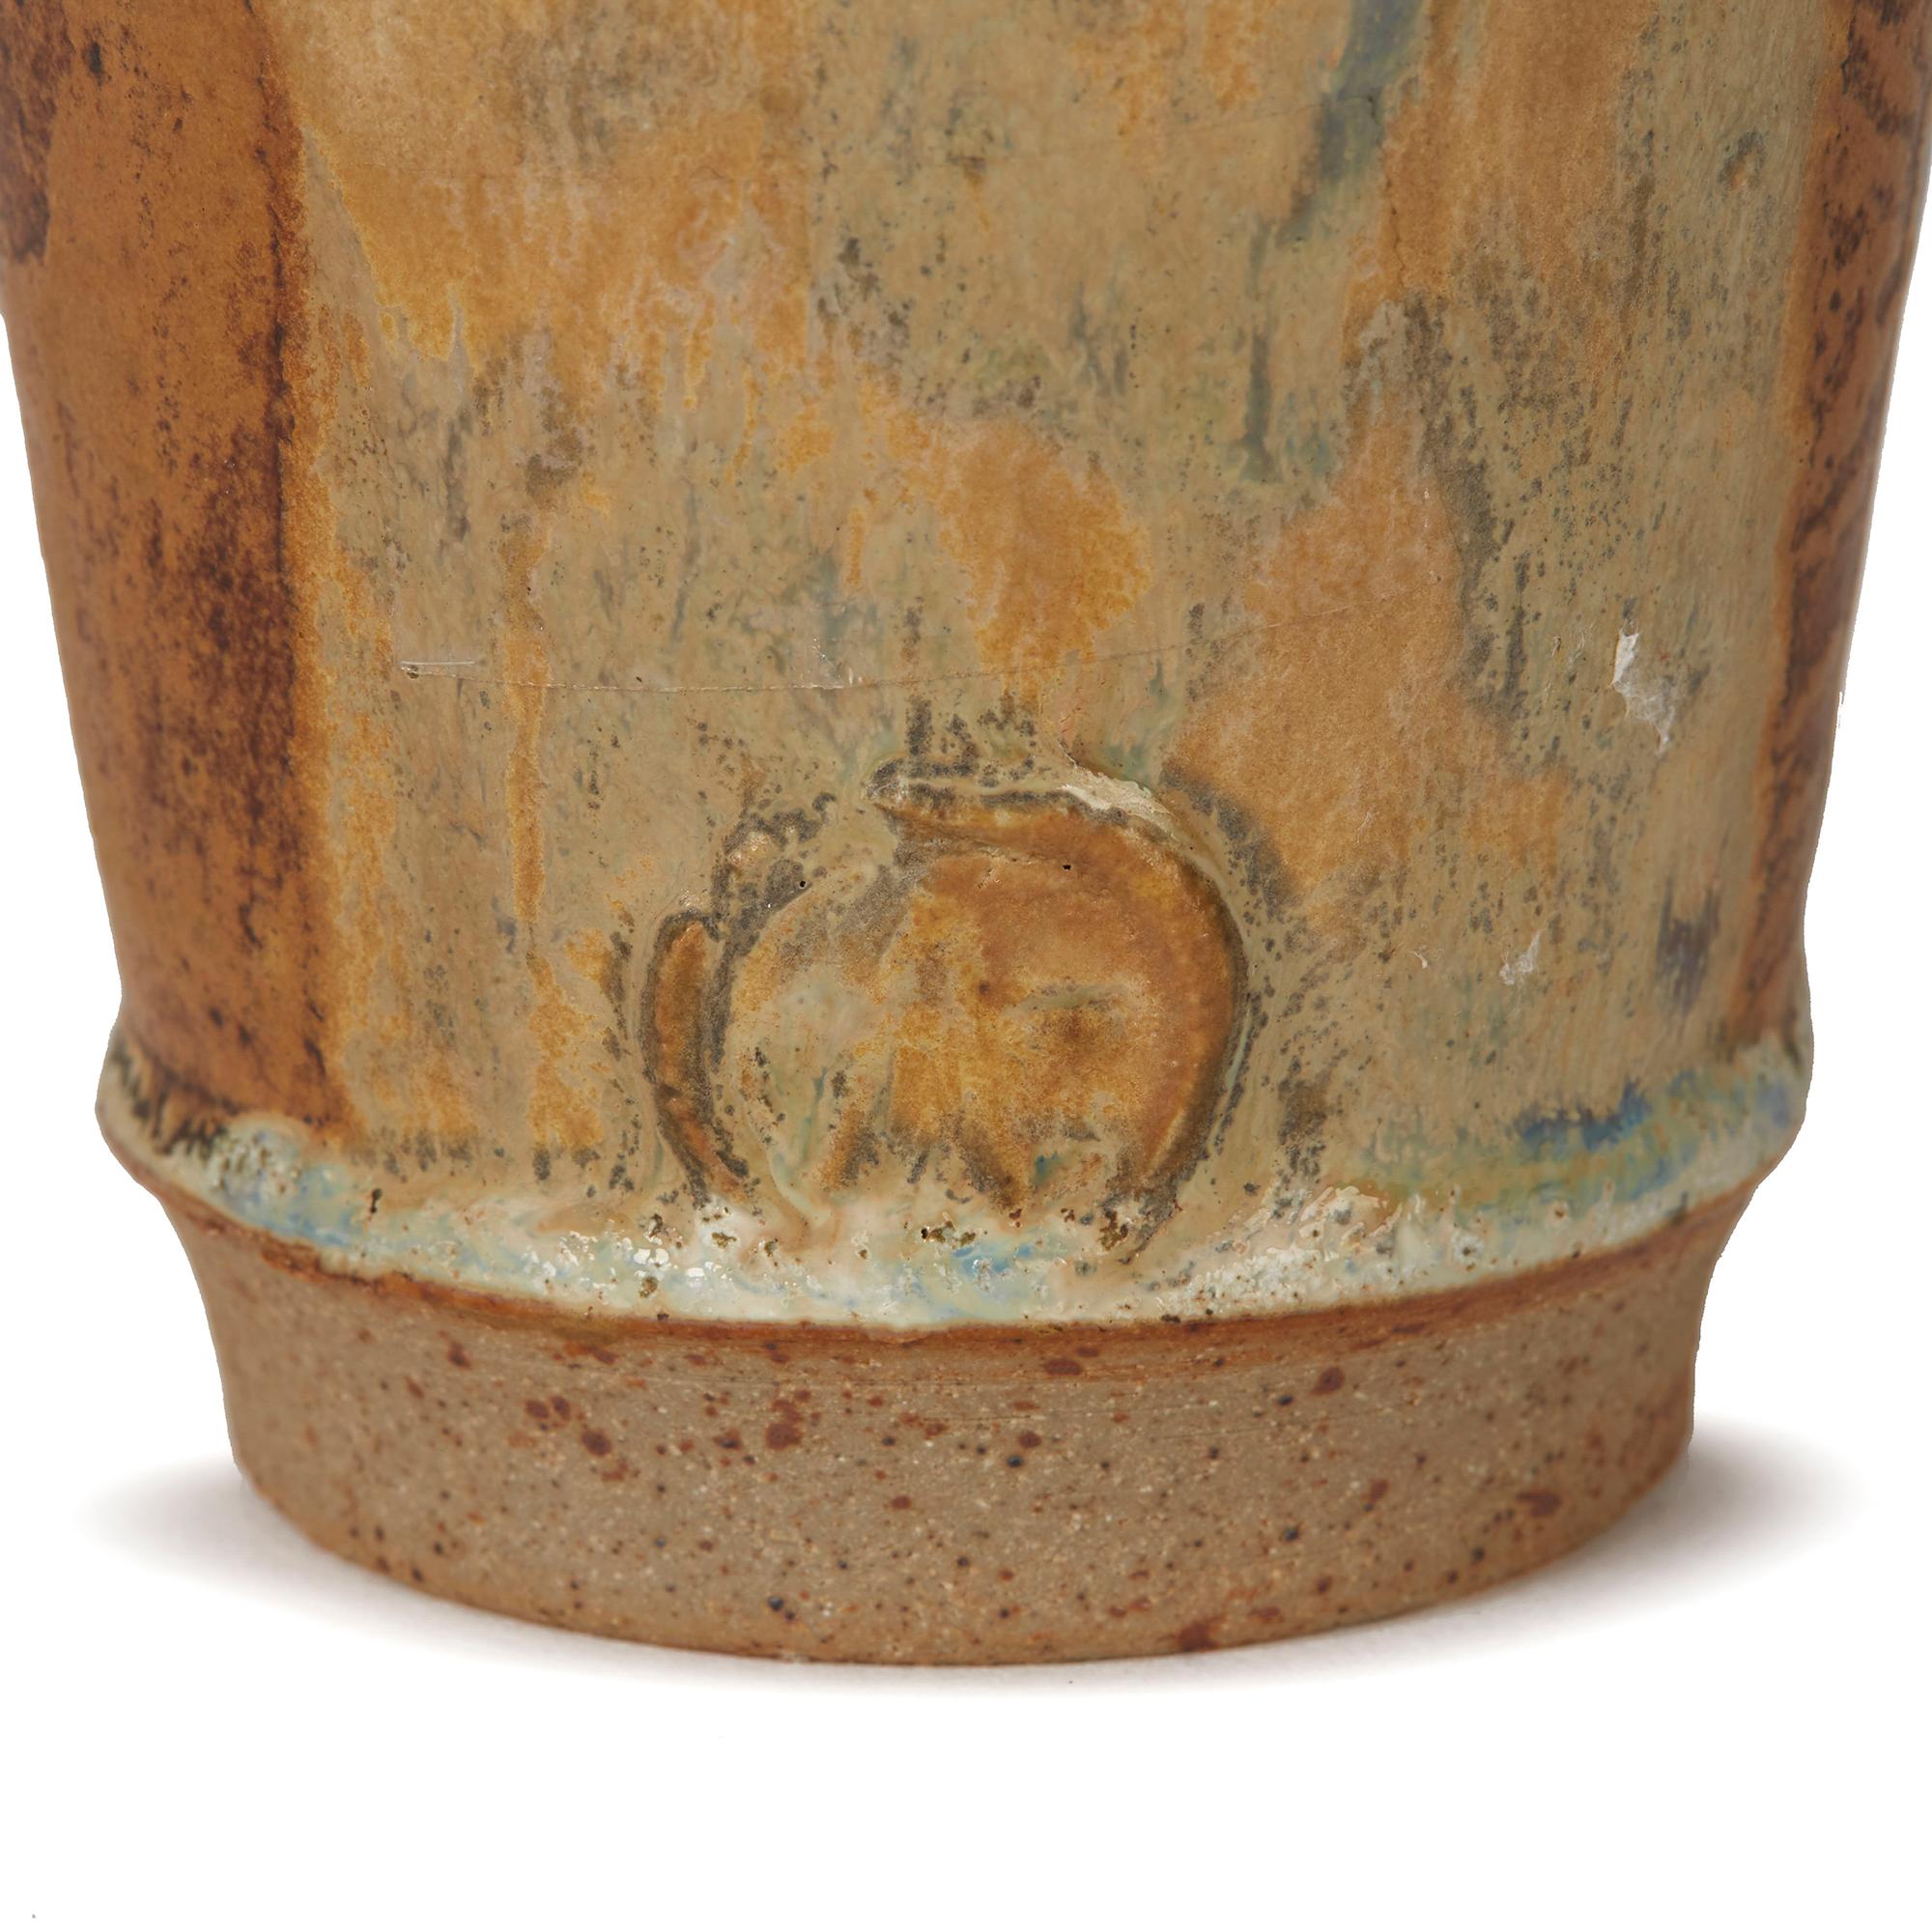 Eine sehr stilvolle Vase von Studio Pottery mit einer geformten Tenmoku-Glasur. Der Körper ist mit mattierten, strukturierten Glasuren in kontrastierenden Brauntönen von Christopher Anderson versehen. Die Keramikvase hat einen unglasierten Fuß mit